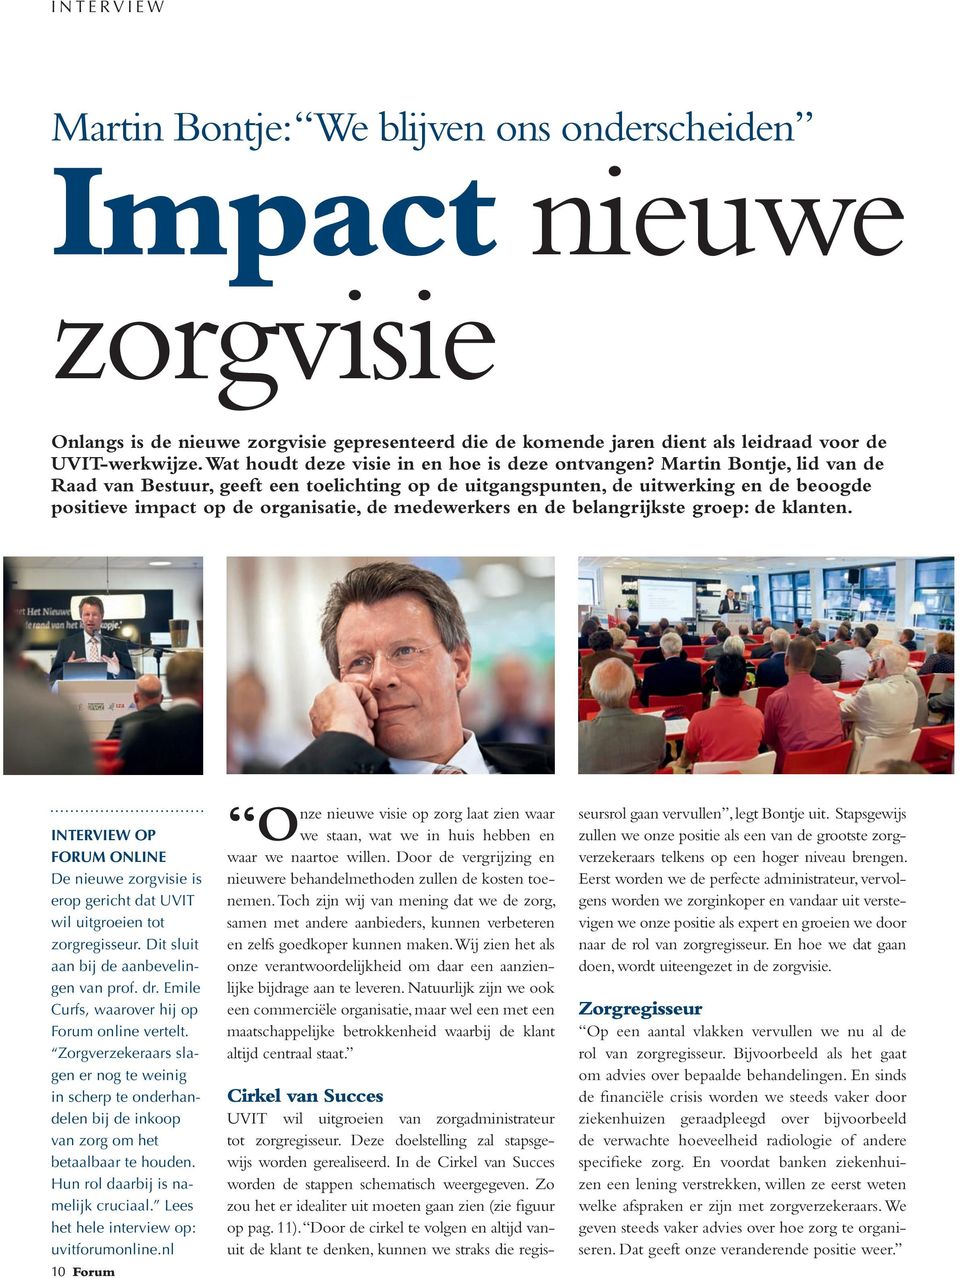 Martin Bontje, lid van de Raad van Bestuur, geeft een toelichting op de uitgangspunten, de uitwerking en de beoogde positieve impact op de organisatie, de medewerkers en de belangrijkste groep: de